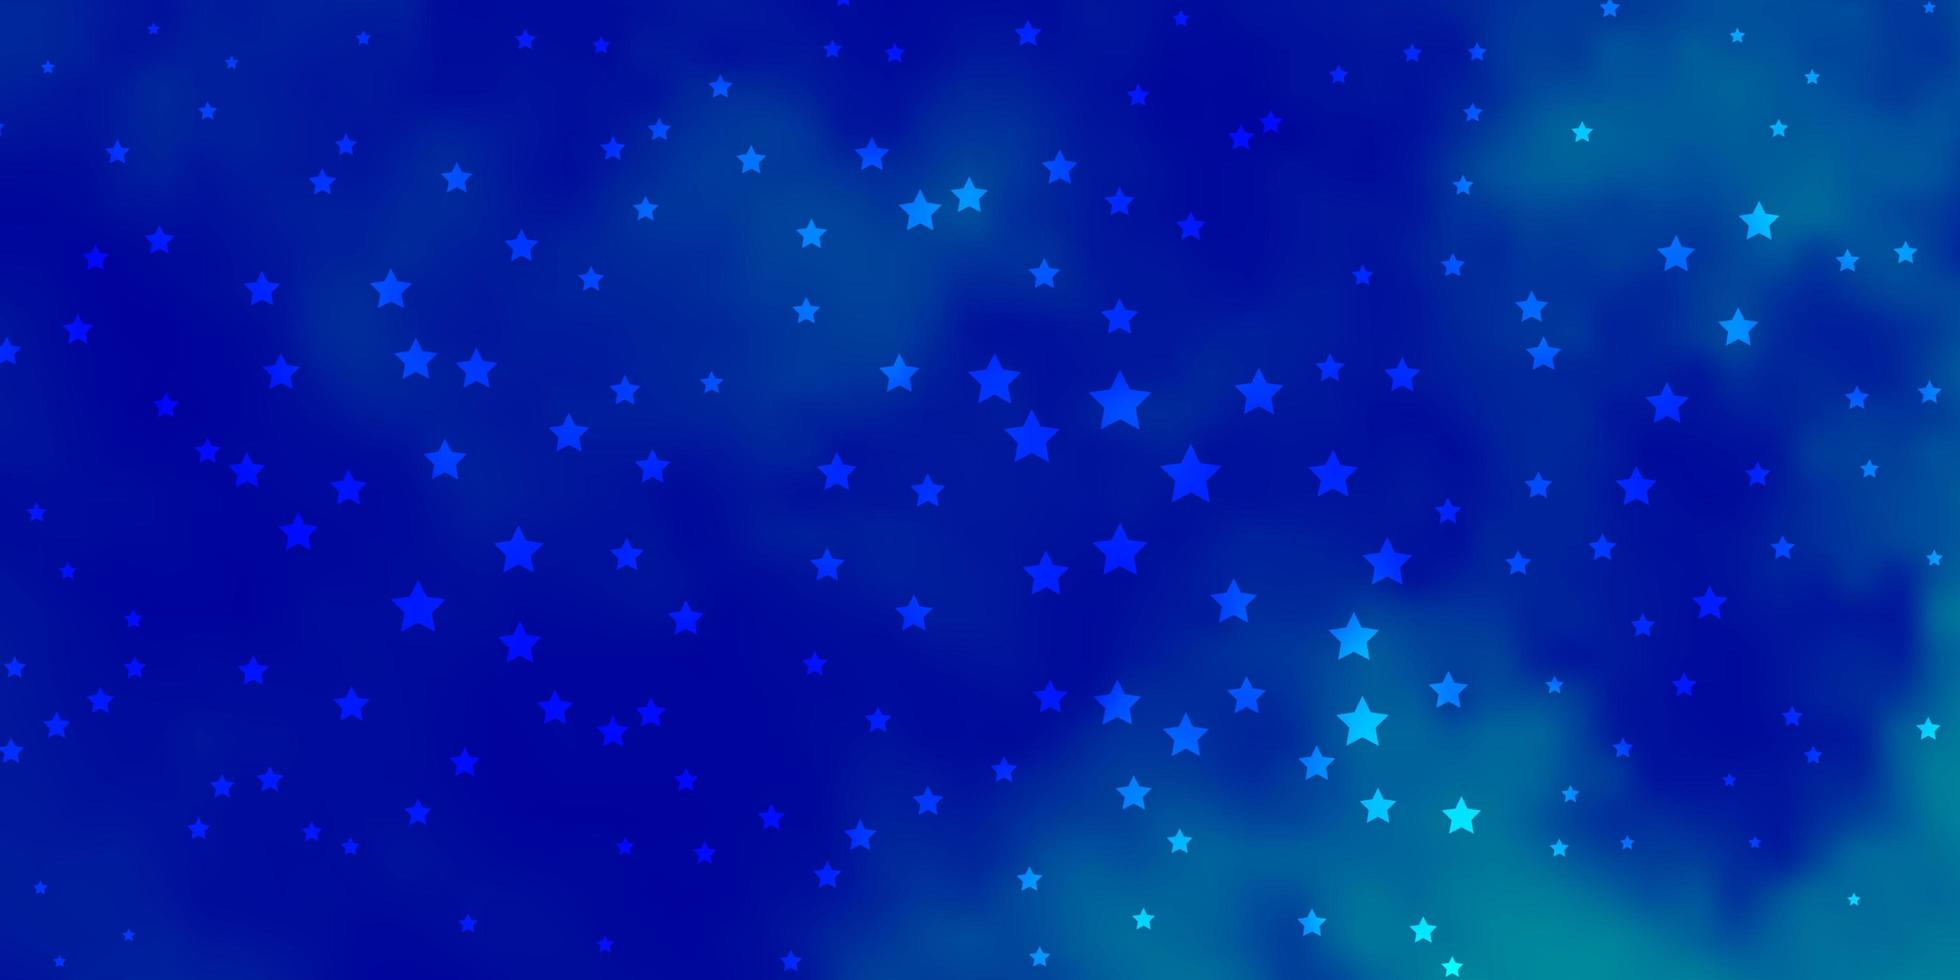 plantilla de vector azul oscuro con estrellas de neón. Ilustración colorida con estrellas de degradado abstracto. patrón para envolver regalos.